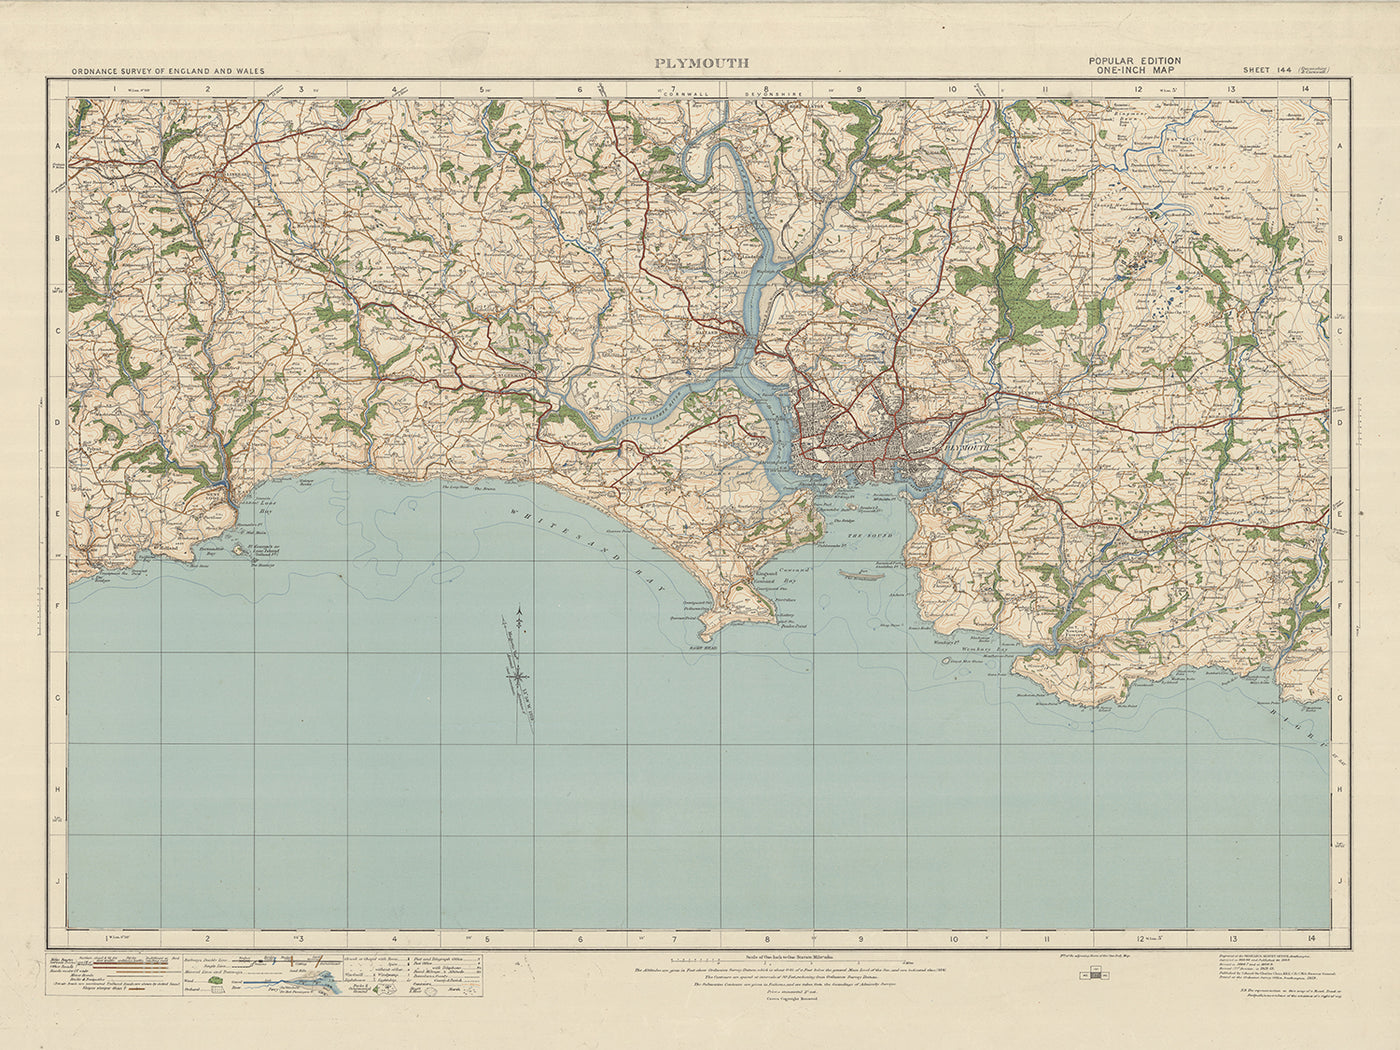 Ancienne carte de l'Ordnance Survey, feuille 144 - Plymouth, 1919-1926 : Saltash, Liskeard, Torpoint et Callington, avec le parc national de Dartmoor, la rivière Tamar et le pont Royal Albert.